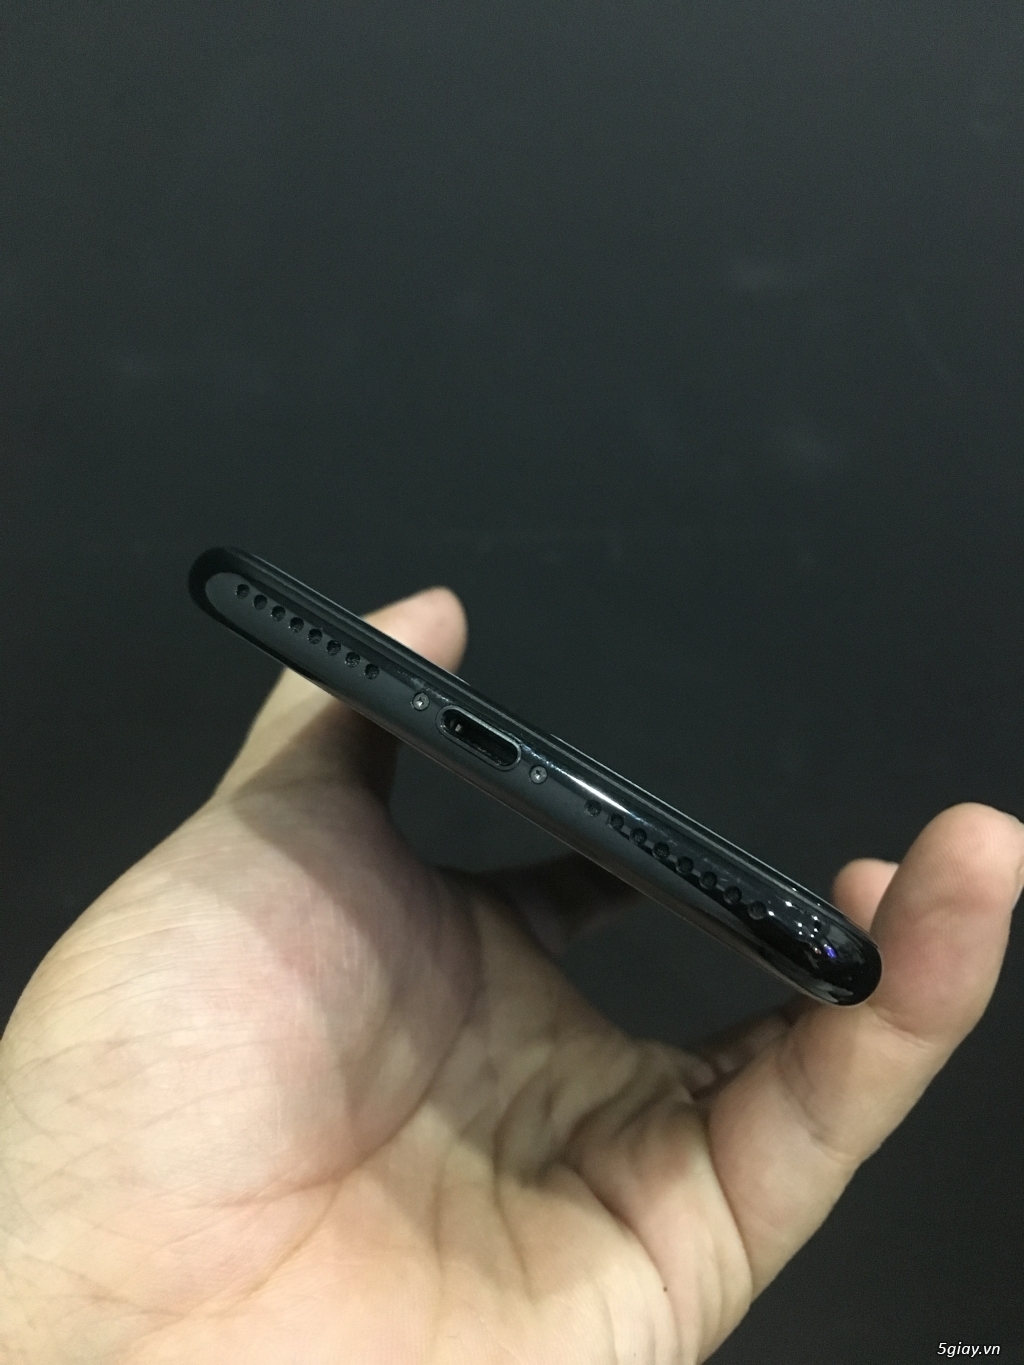 iPhone 7Plus 128gb jetblack trả bảo hành chính hãng - 2